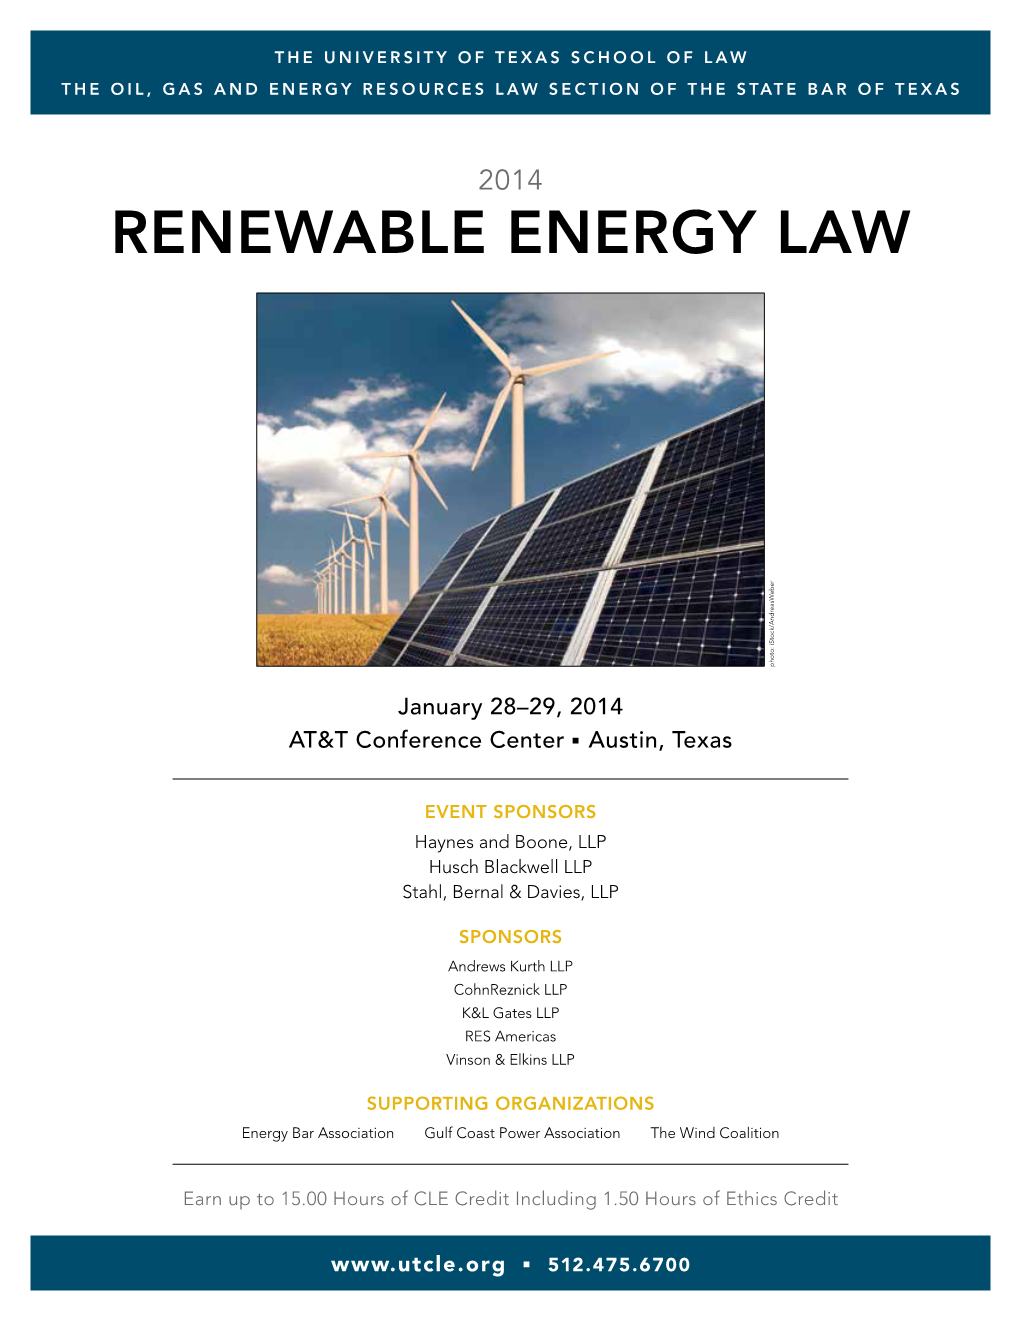 Renewable Energy Law Photo: Istock/Andreasweber